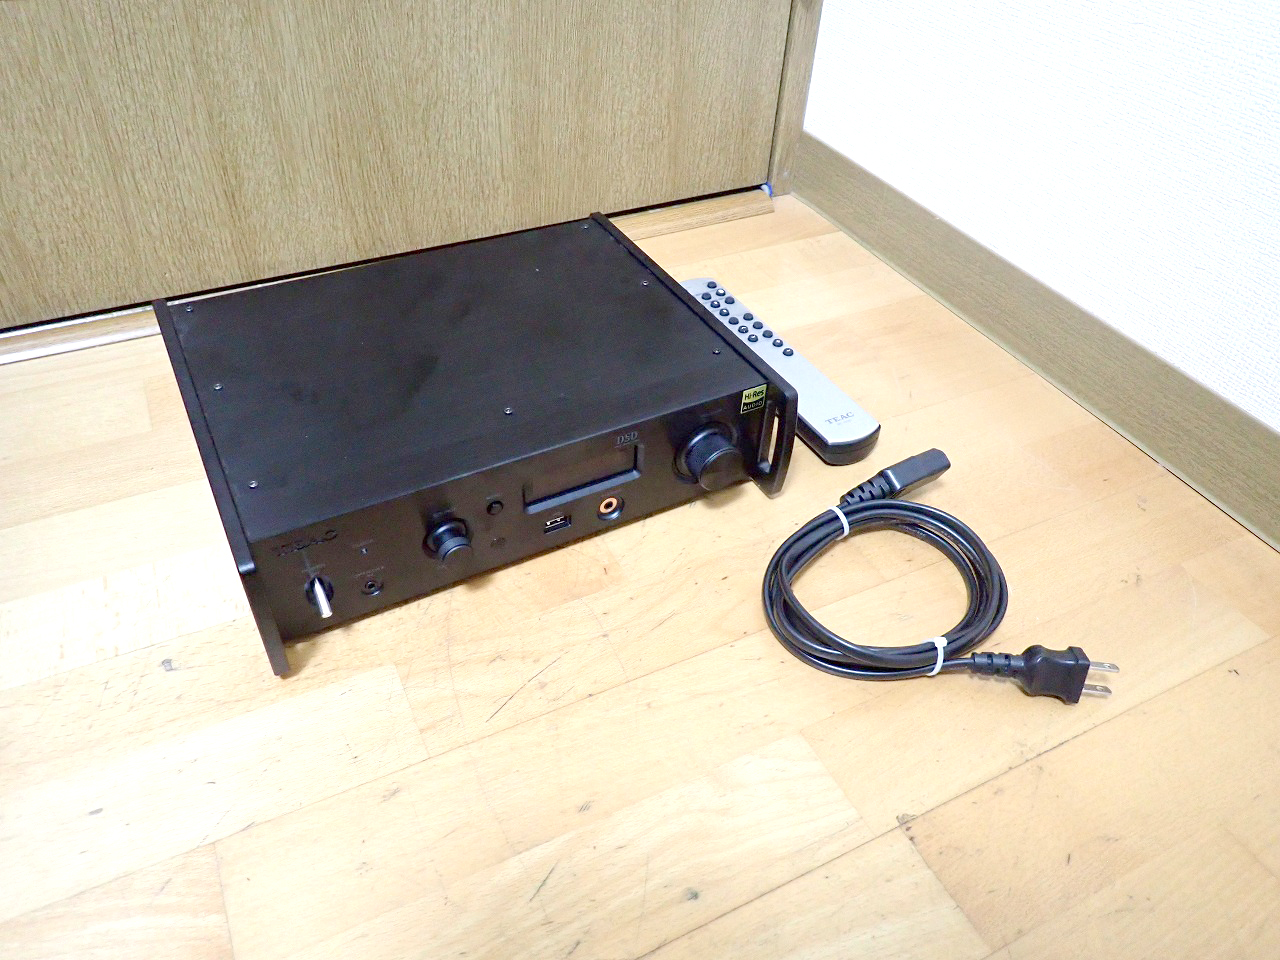 ネットワークプレーヤー TEAC NT-505-B ティアック USB DAC ハイレゾ ブラック 2018年